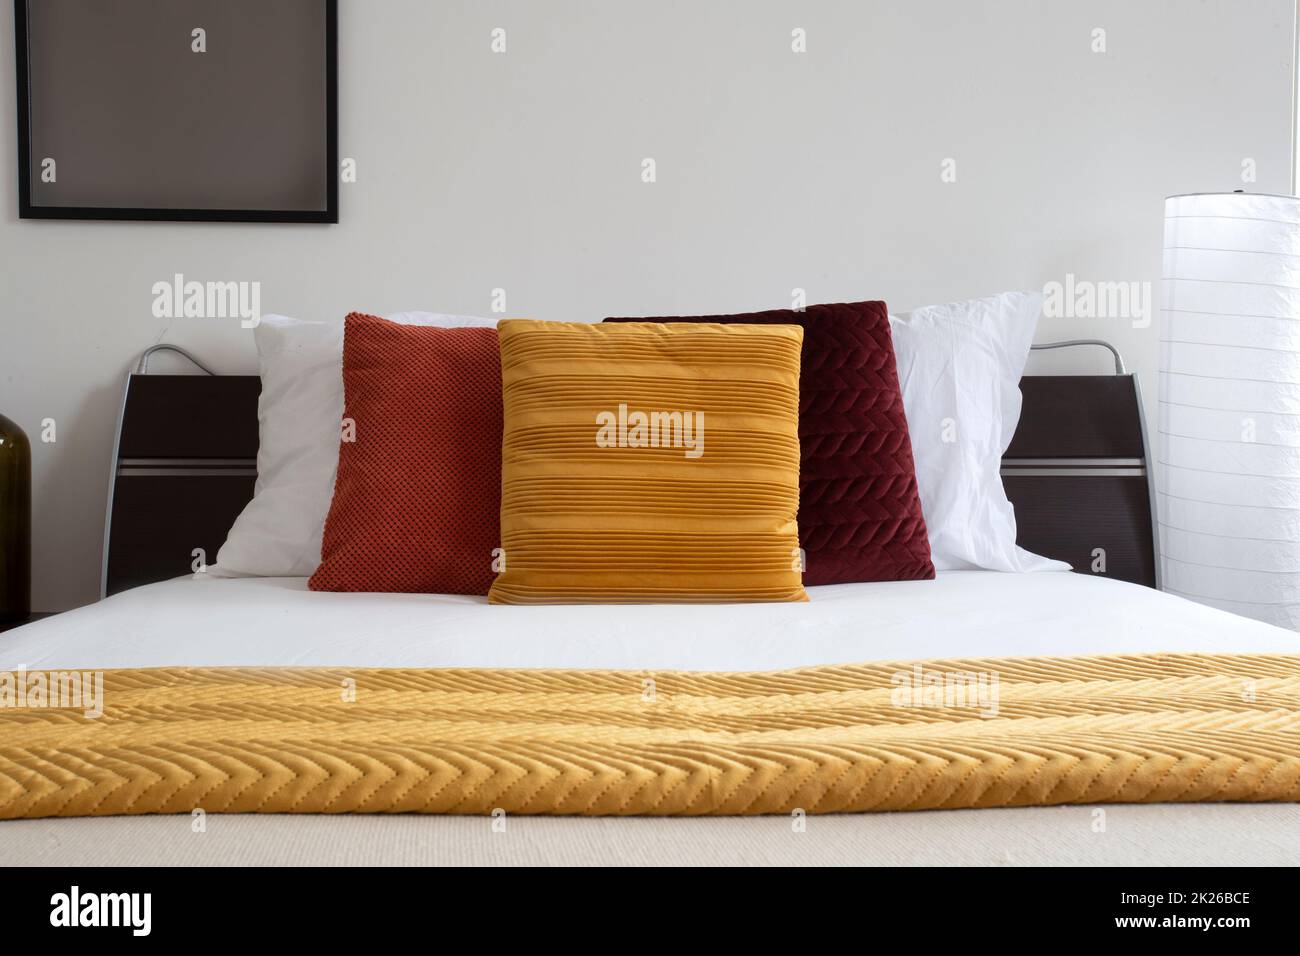 cama hecha. Cama moderna y ordenada por la noche. Cama doble elegante. Primer plano de un dormitorio hecho en una habitación de hotel. Cama cubierta con sábanas y almohadas blancas. Foto de stock